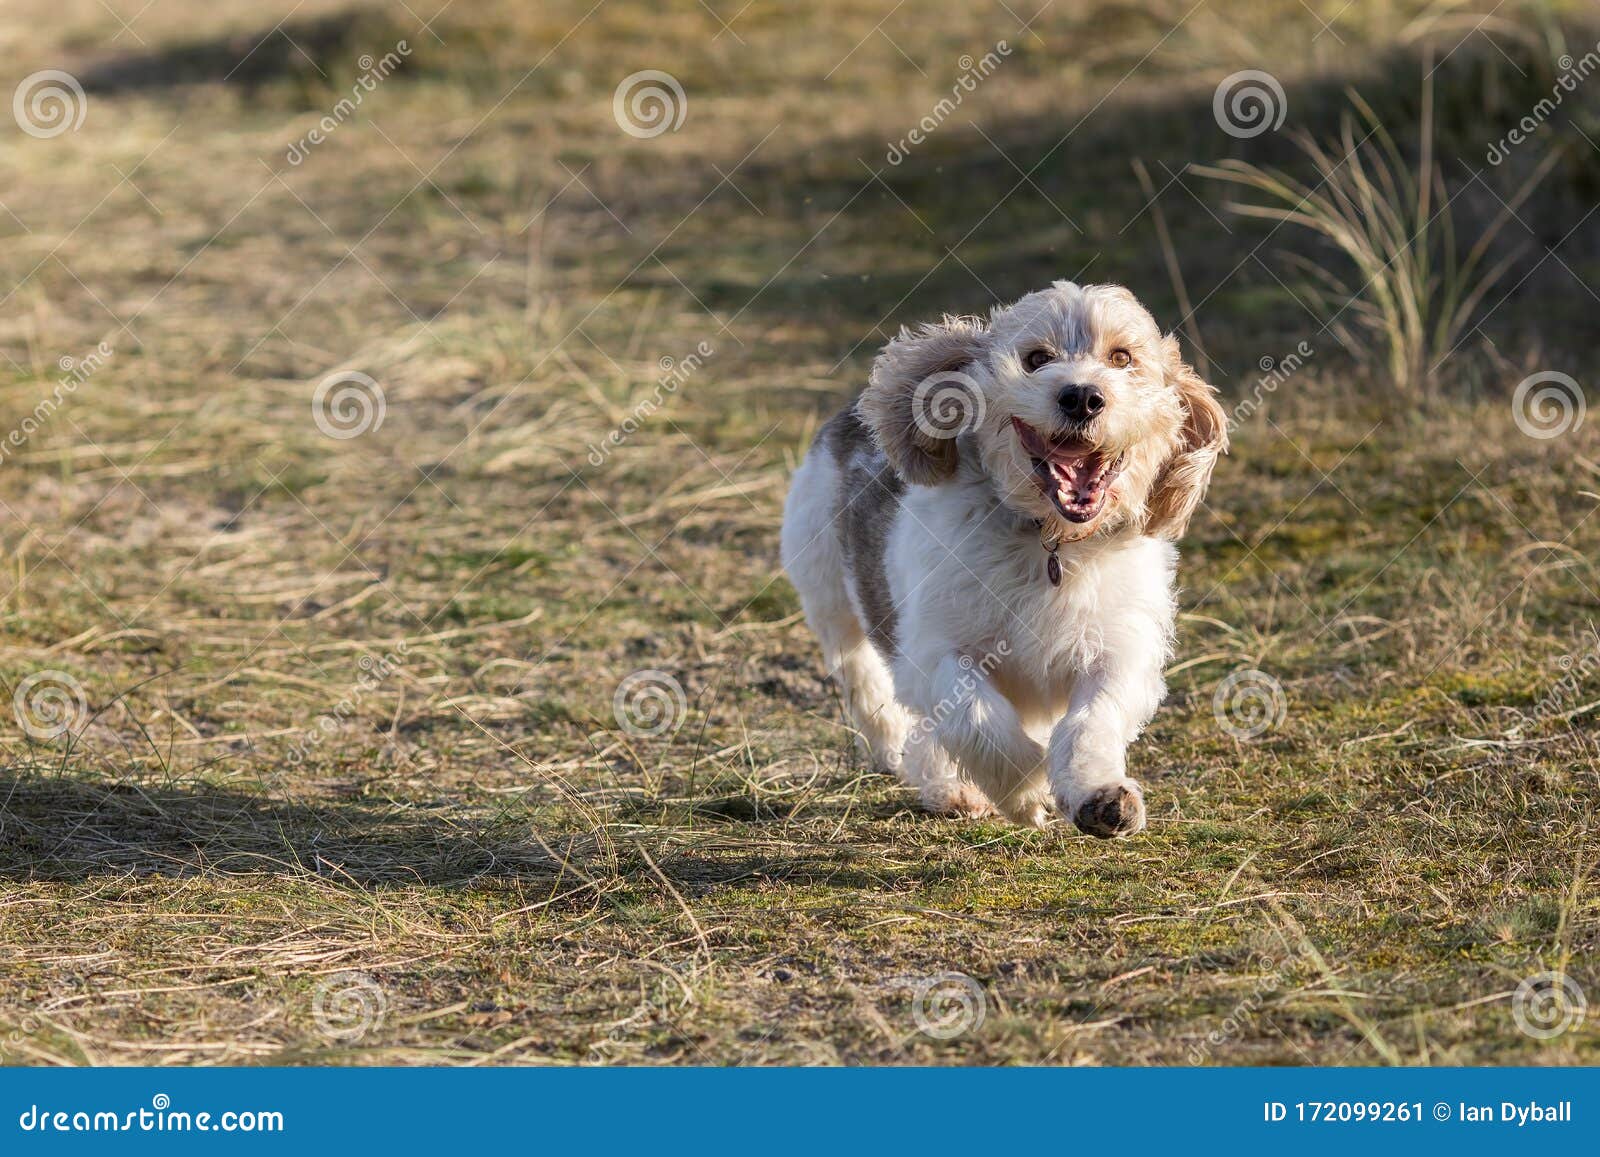 Happy Dog Face. Pet Having Fun. Funny Animal Meme Image Stock Image - Image  of canine, emotion: 172099261